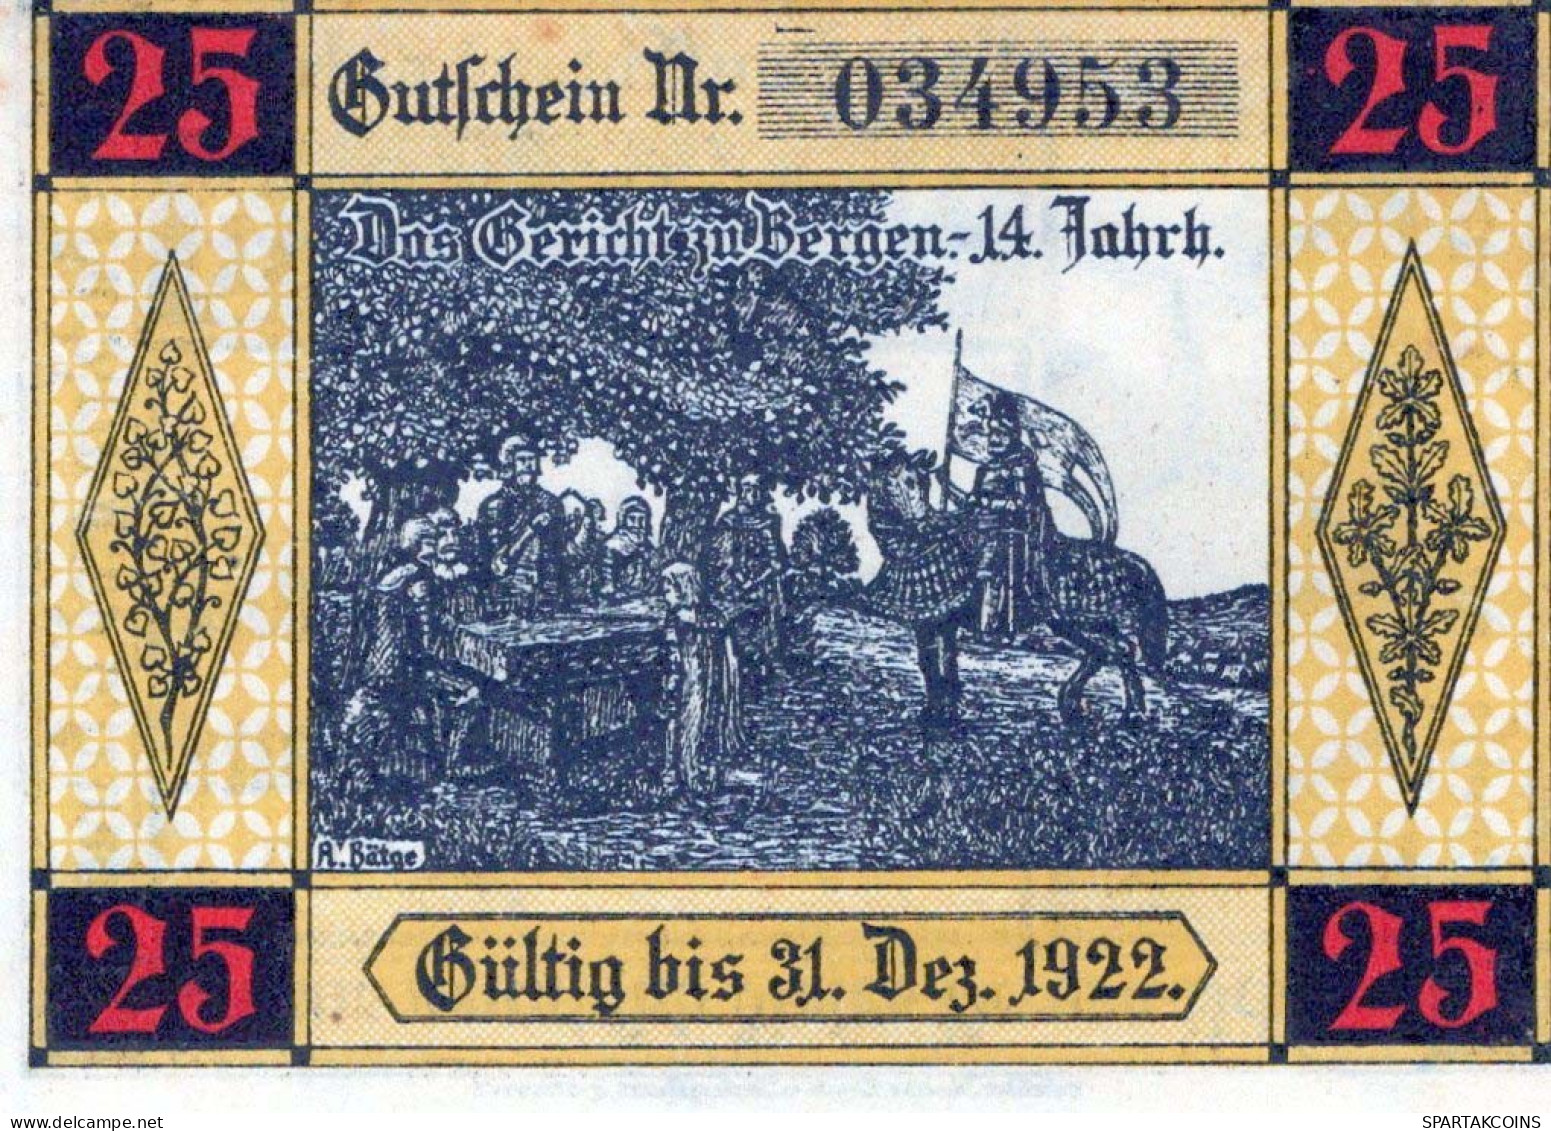 25 PFENNIG 1922 Stadt BERGEN AN DER DUMME Hanover UNC DEUTSCHLAND Notgeld #PA173 - [11] Local Banknote Issues